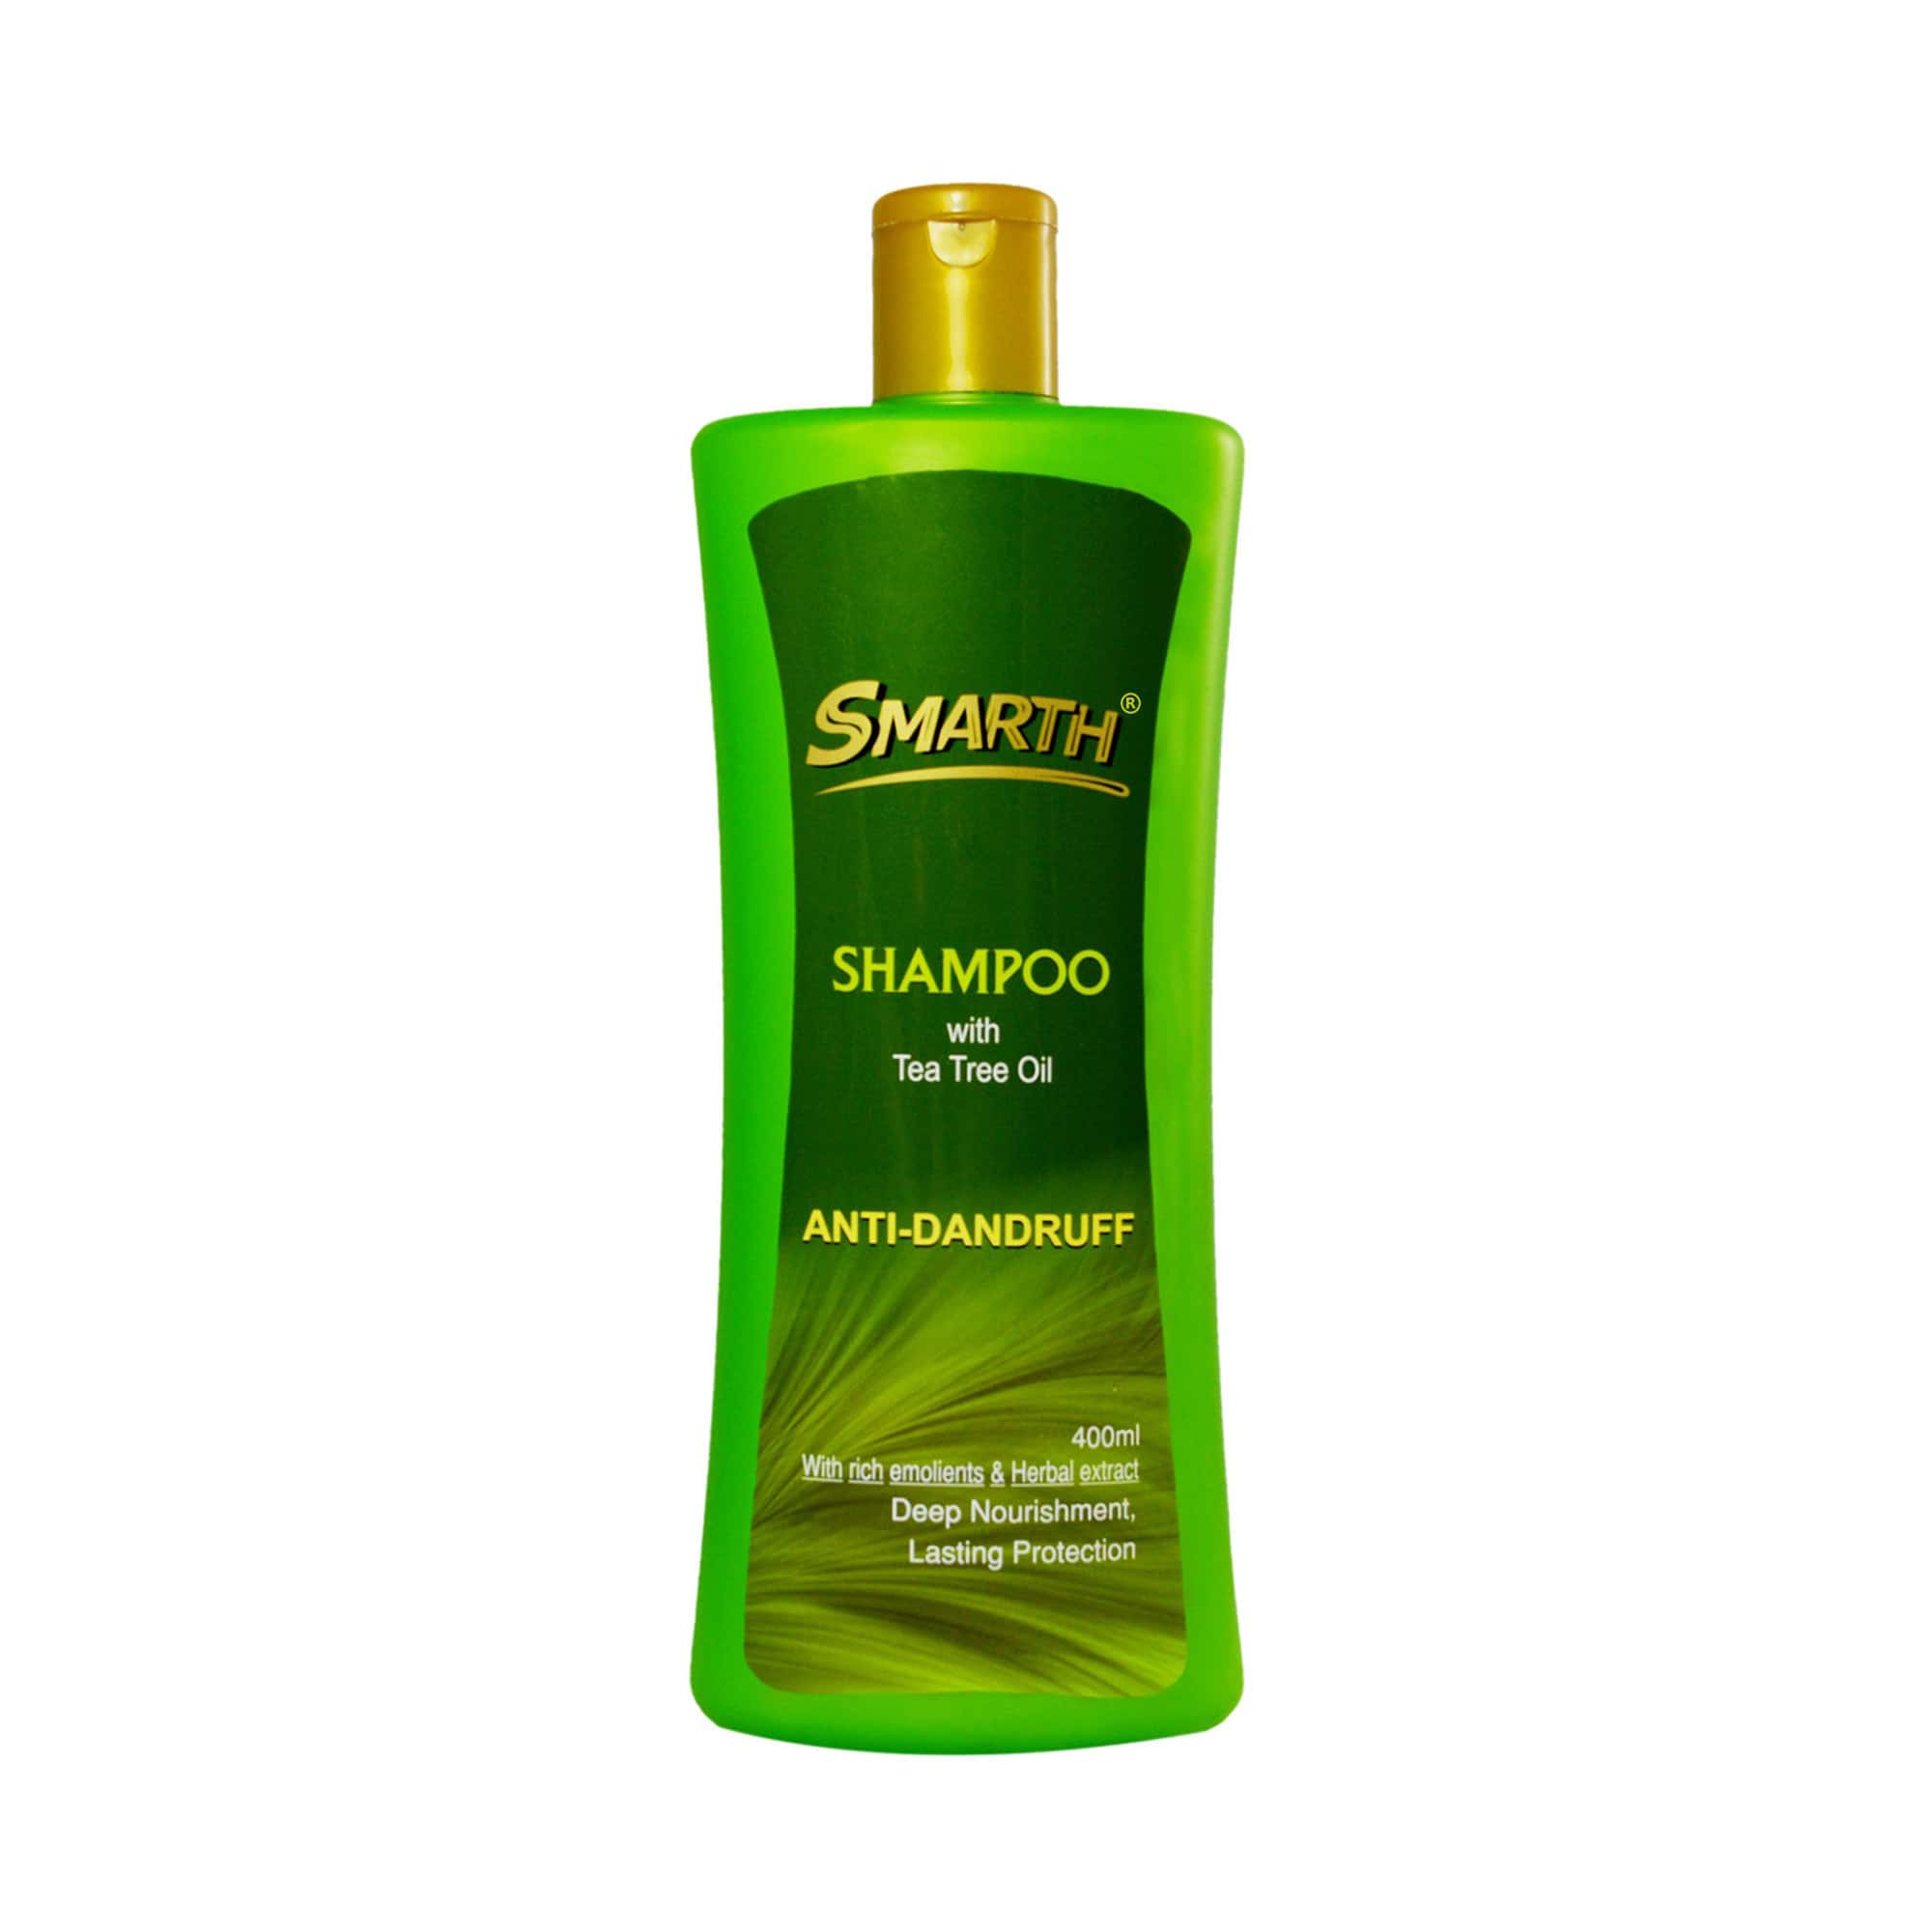 Tea Tree Oil Anti-Dandruff Shampoo